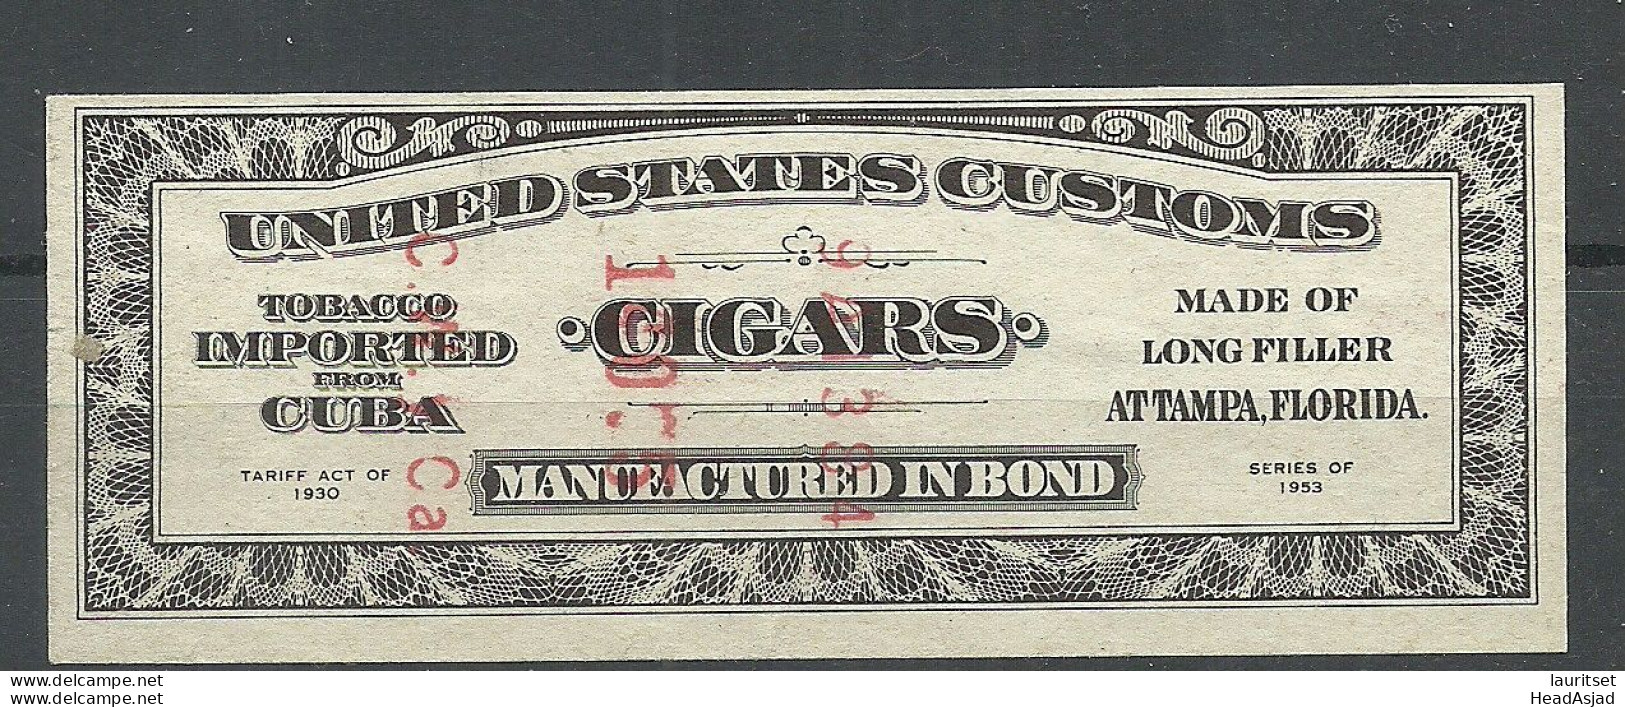 USA Tobacco Tax Cigars 1953 - Steuermarken